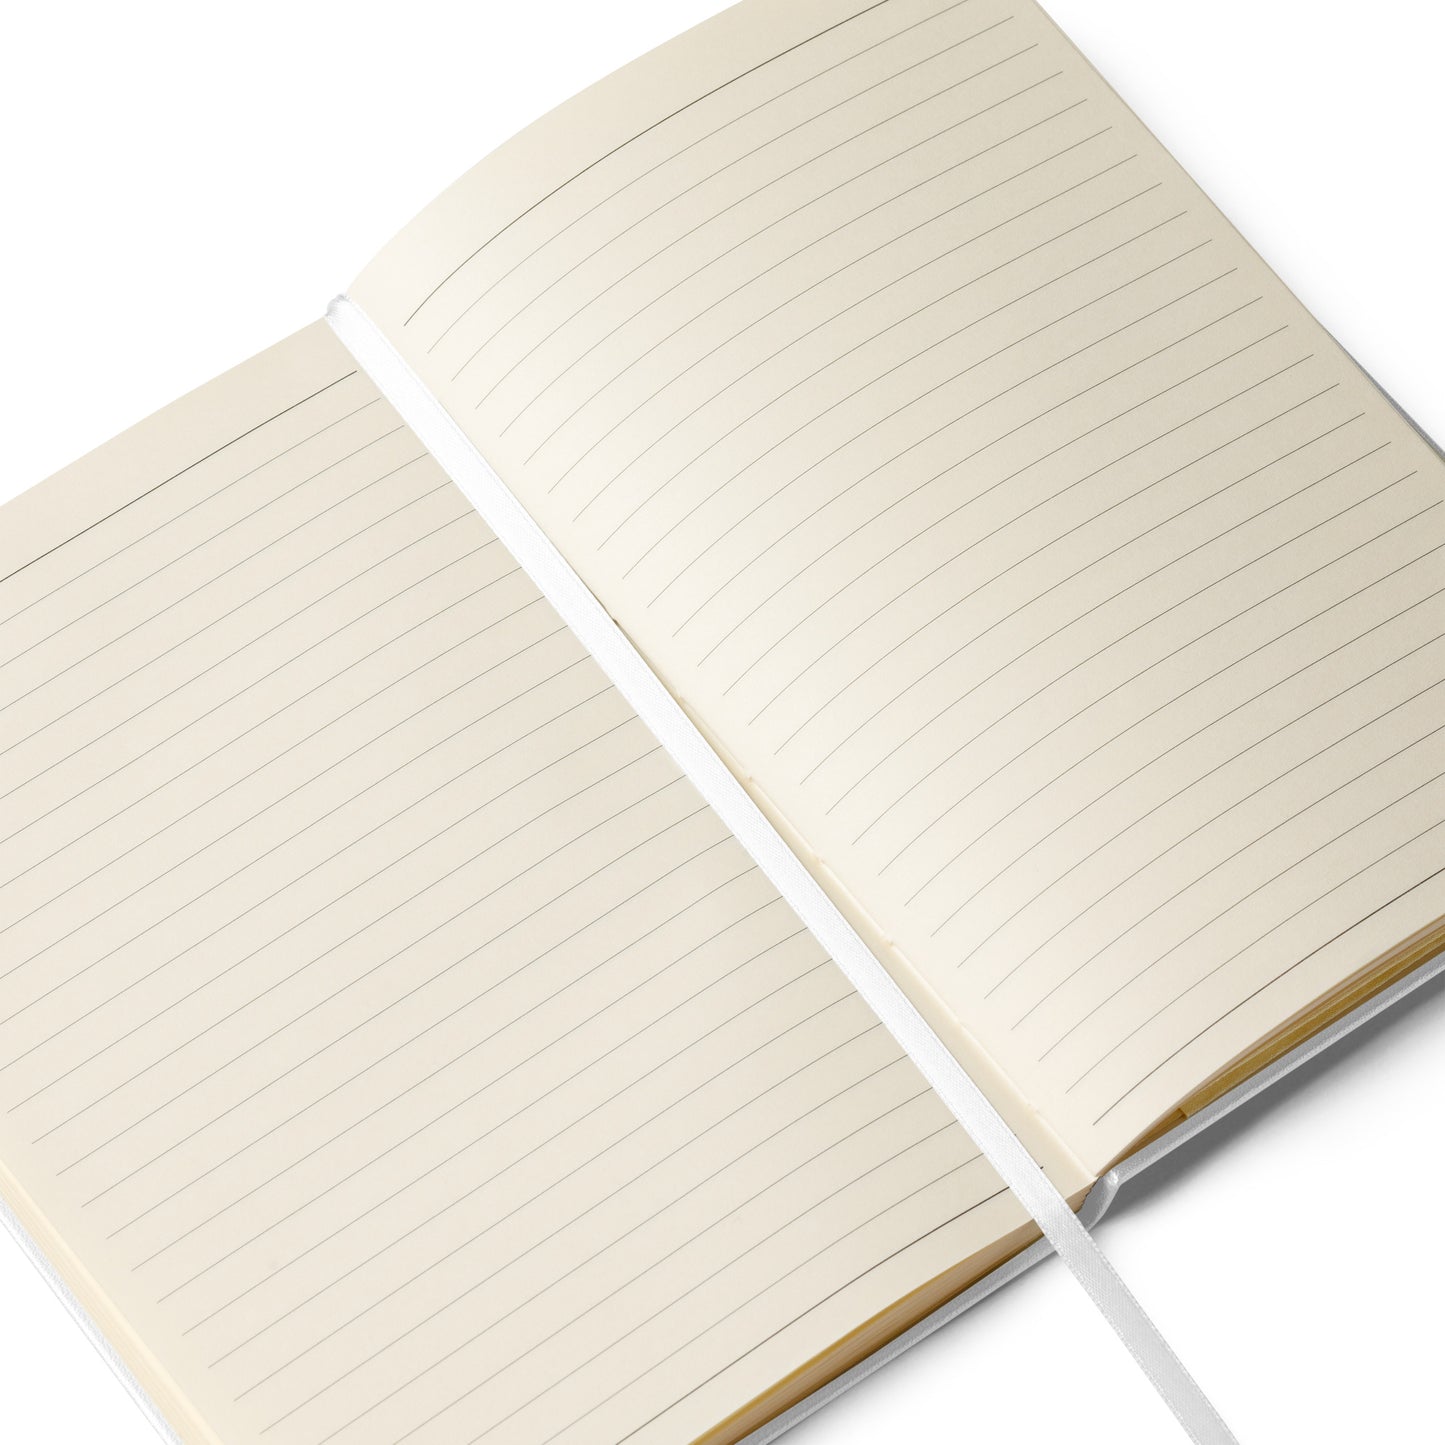 'Stop Being Helpful' Notebook